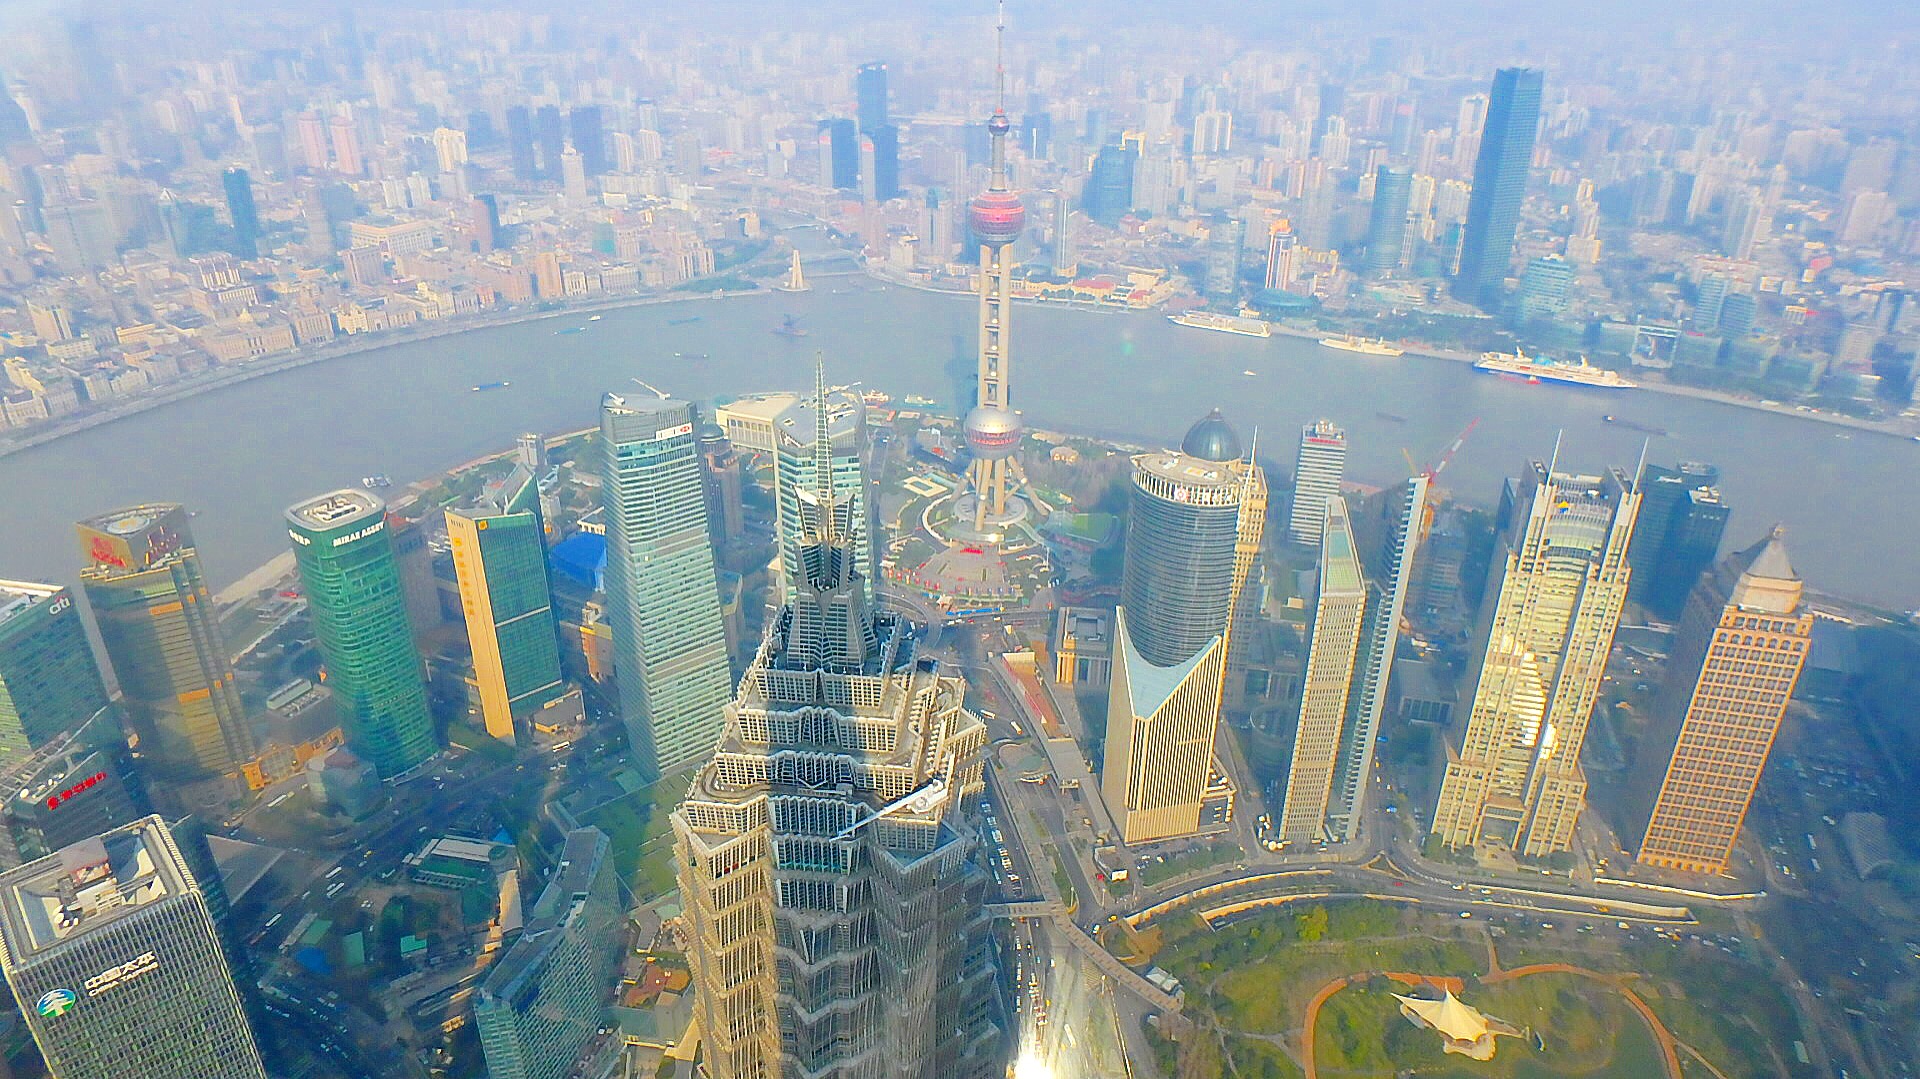 上海の三大展望台比較 チケットの事前予約 割引購入 上海旅行のおすすめ観光 絶景in 国内 海外旅行記